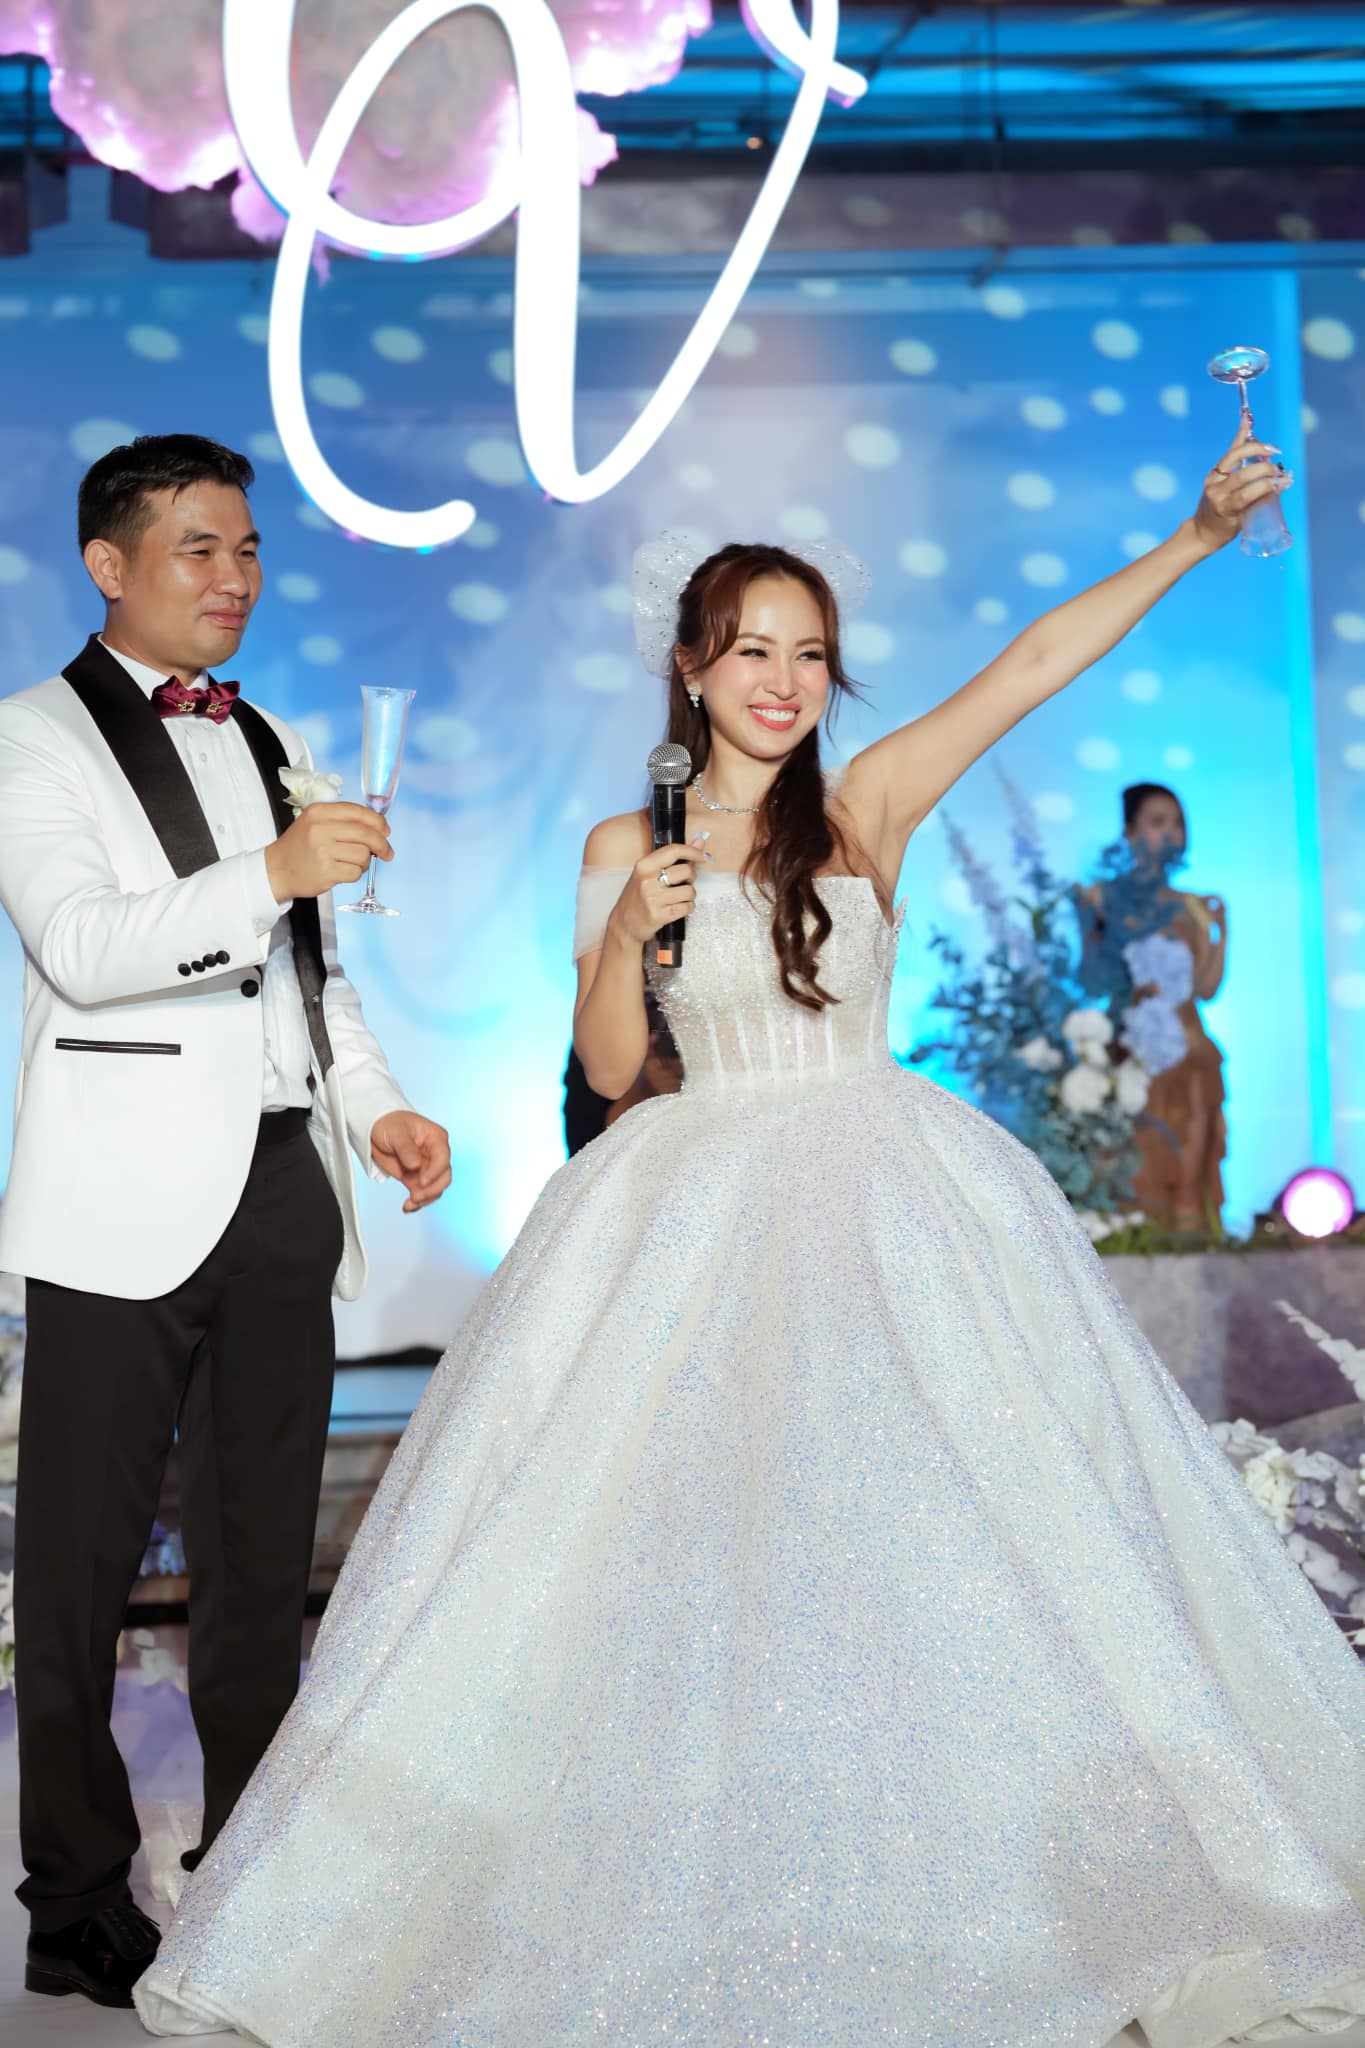 'Kiếp nạn' bóc phòng bì tiền mừng cưới của Thanh Vân Hugo, khuyên nên chuyển khoản hoặc đi polime - ảnh 3